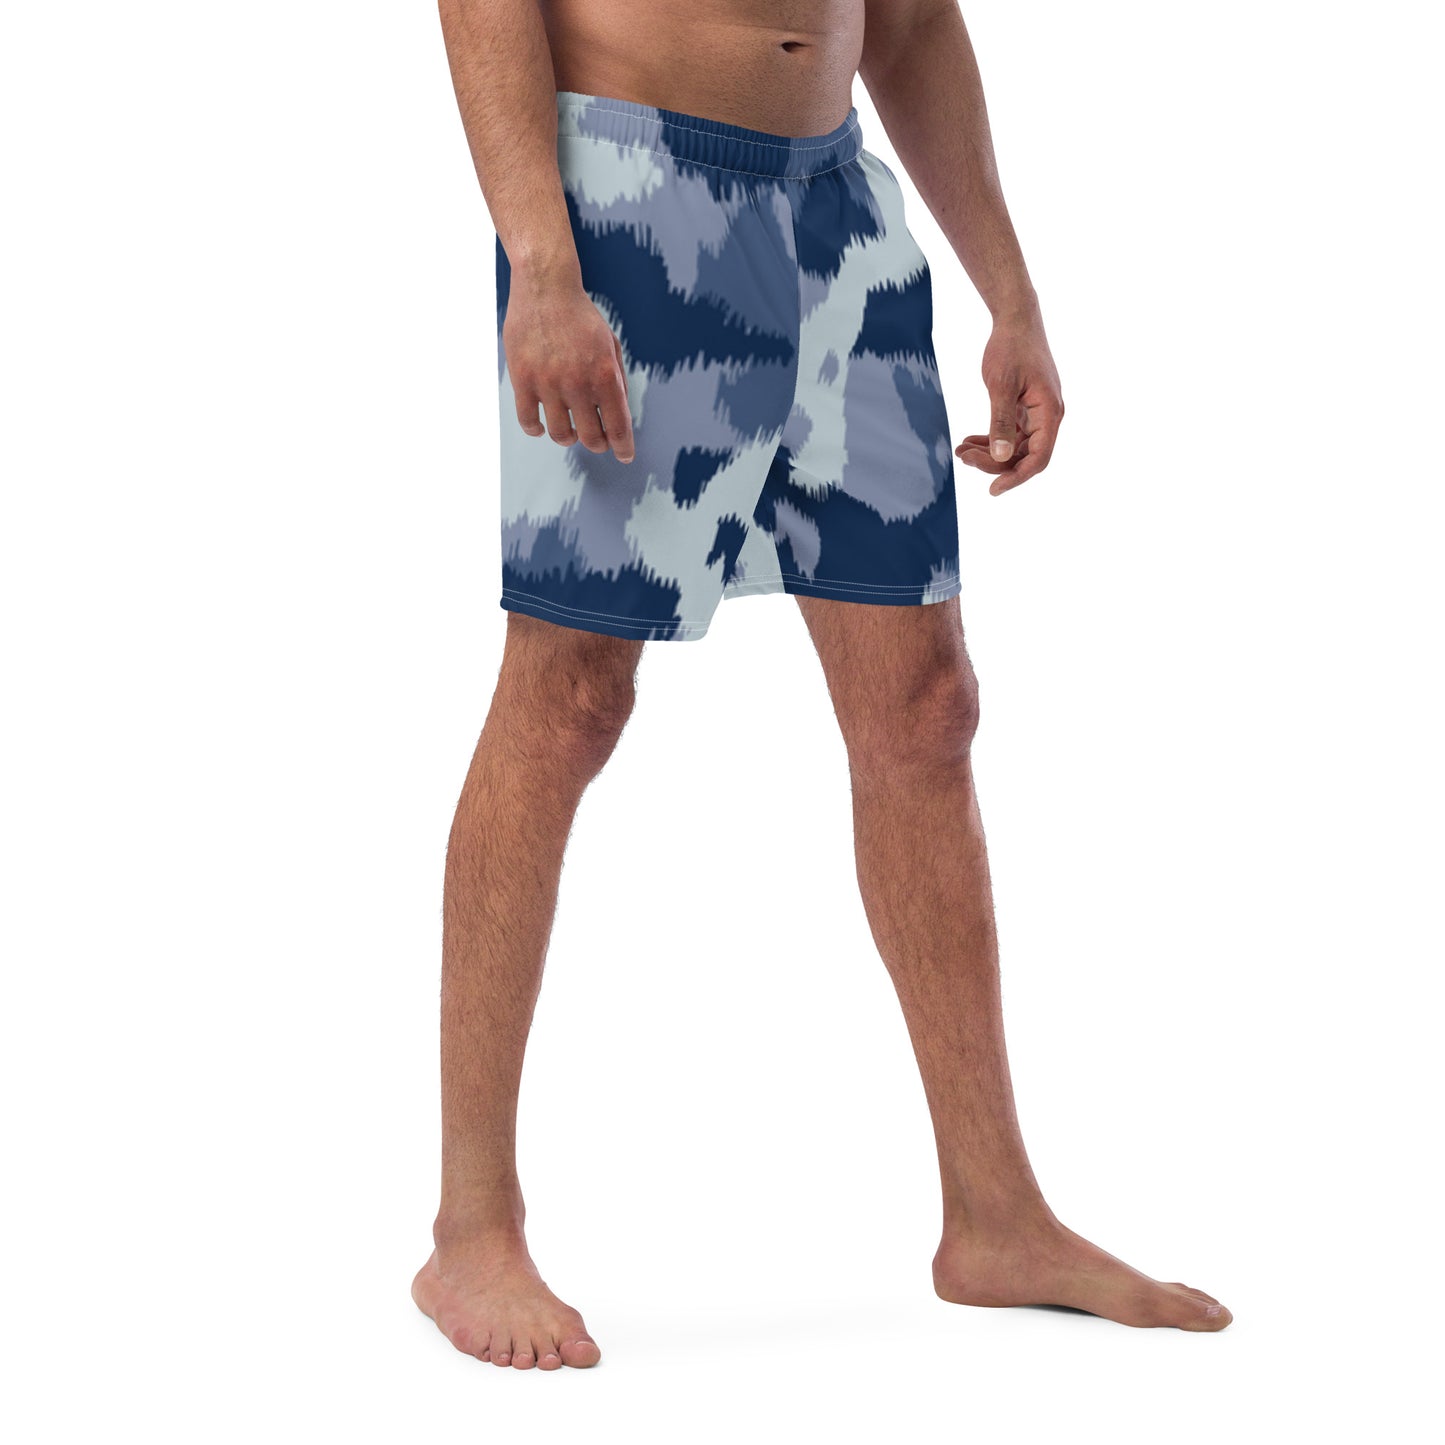 Men's Swim Trunks (Glamourange Mens Swim Trunks By Patterns - 003 Model)